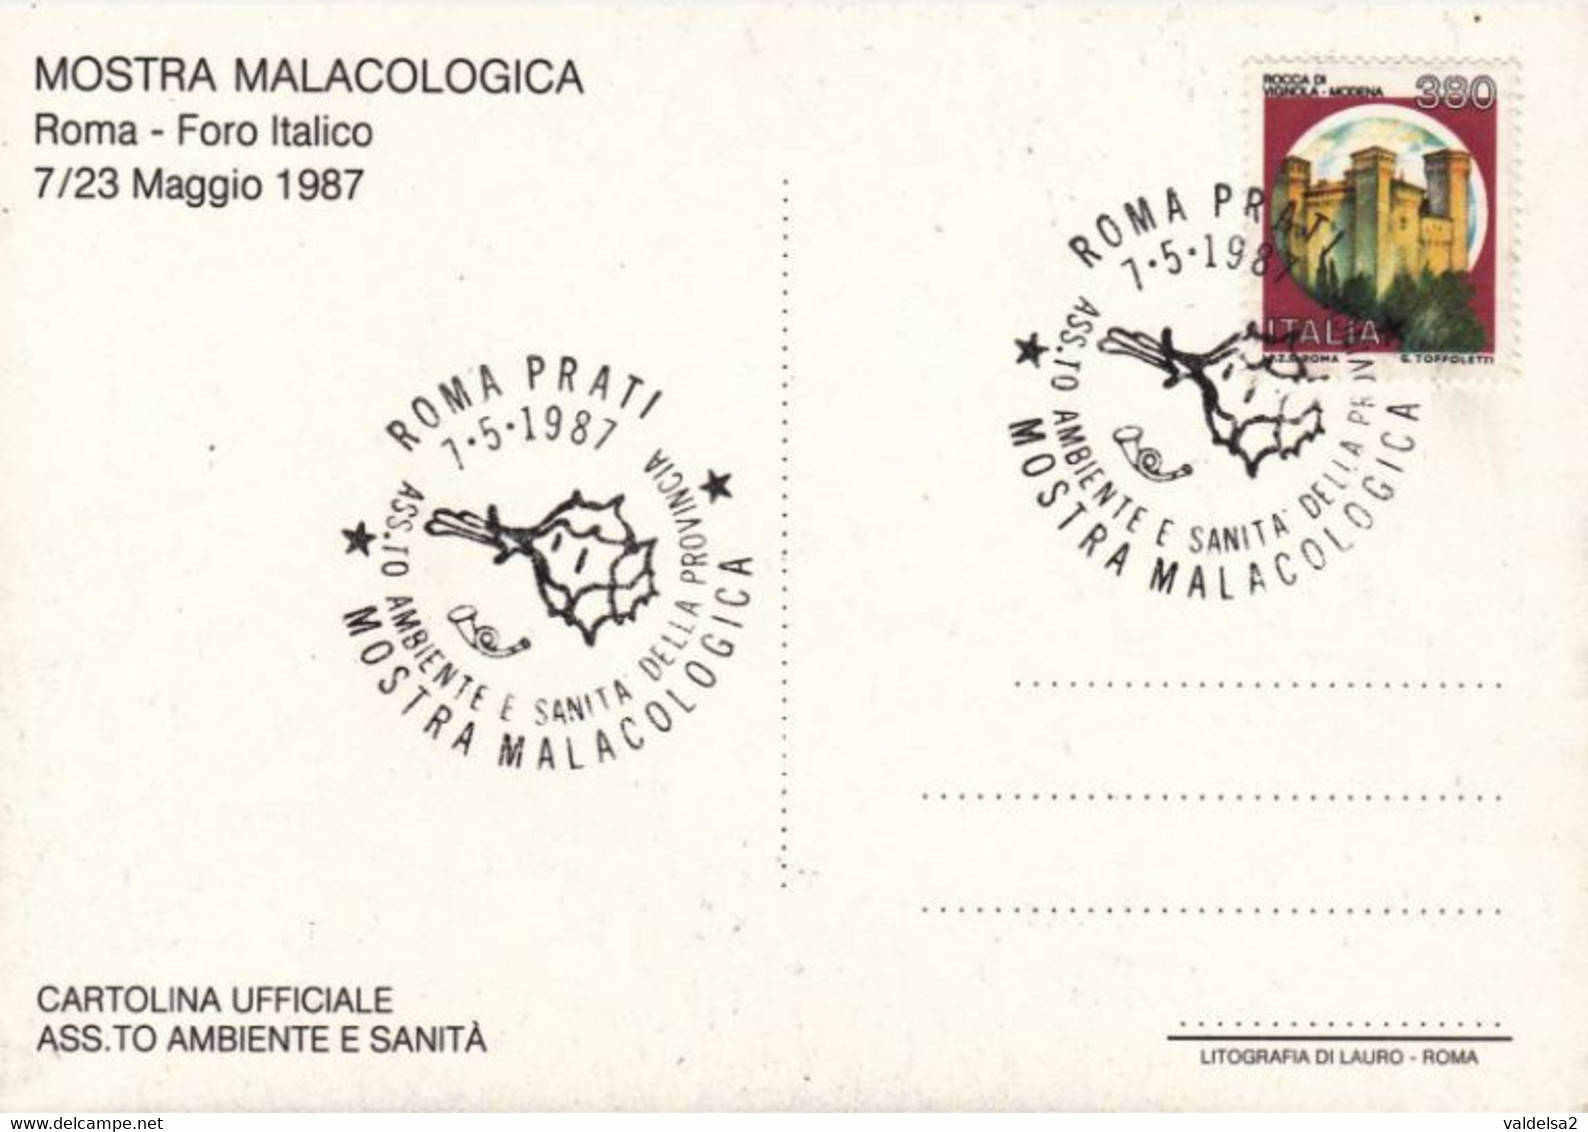 ROMA PRATI - FORO ITALICO - MOSTRA MALACOLOGICA - CONCHIGLIE / CONCHIGLIA / SHELL - 1987 - Mostre, Esposizioni